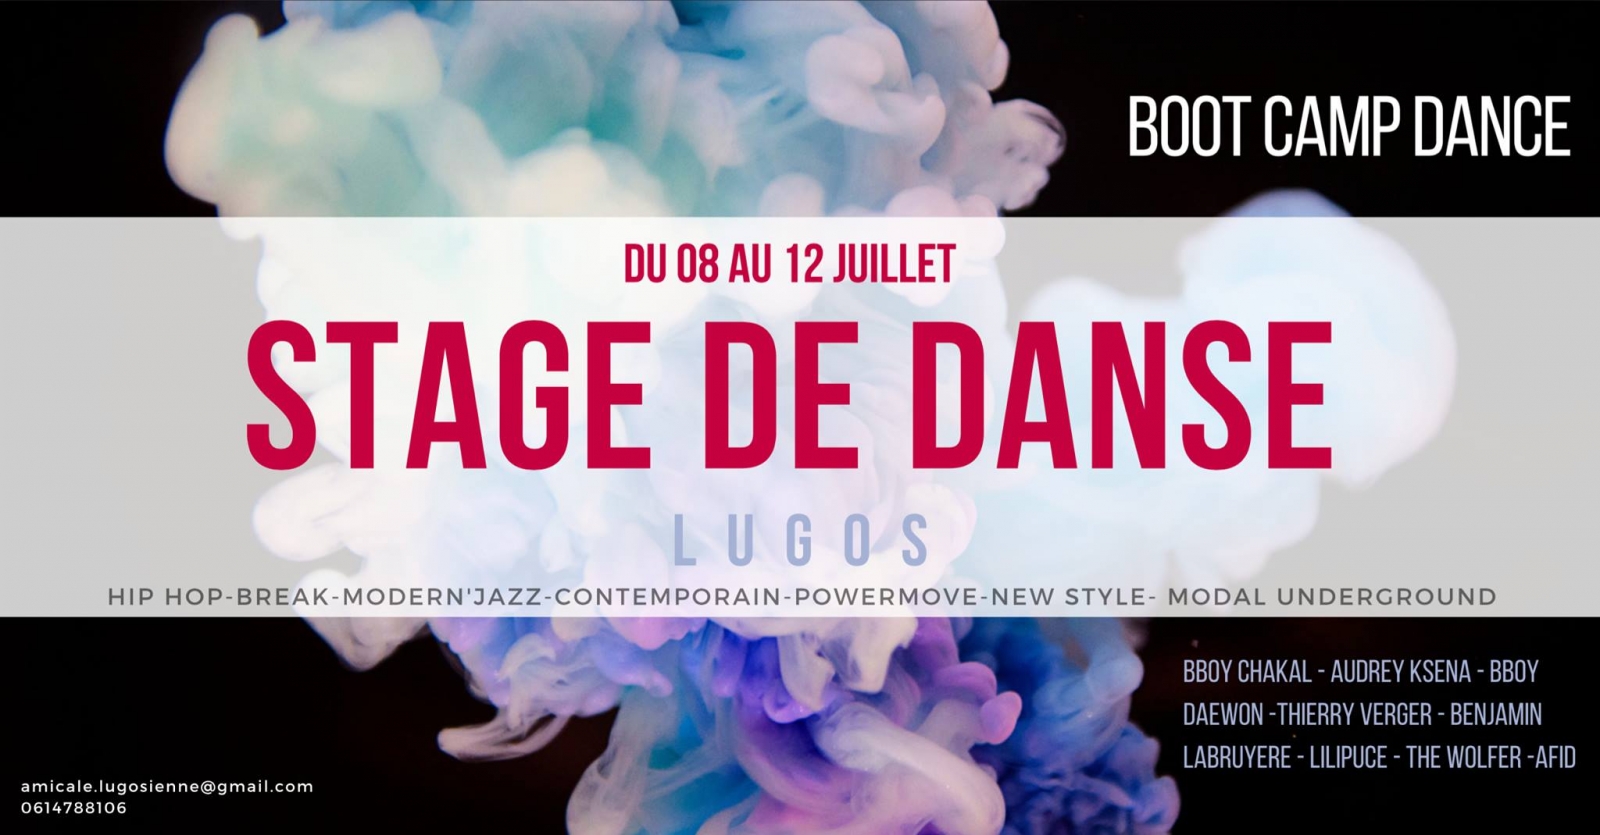 Stage de Danse Lugos 2019 poster